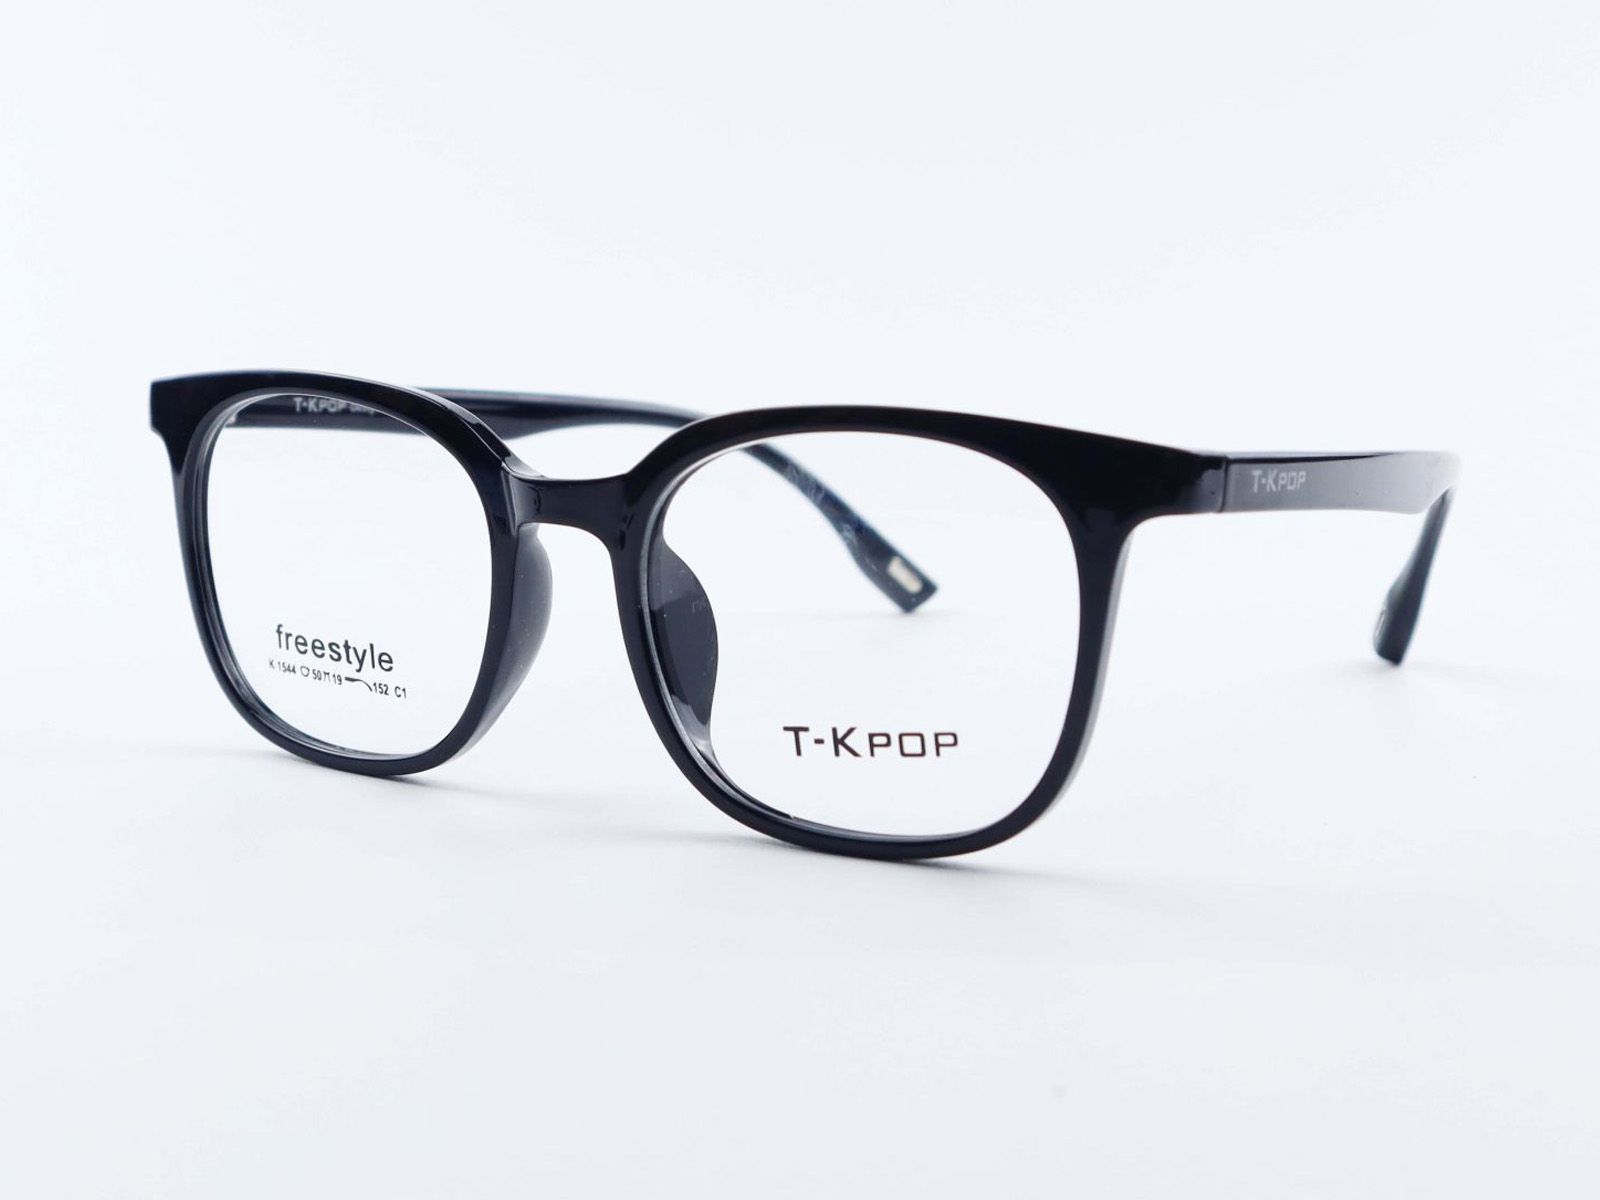  Gọng kính cận T-Kpop K1544-C1 